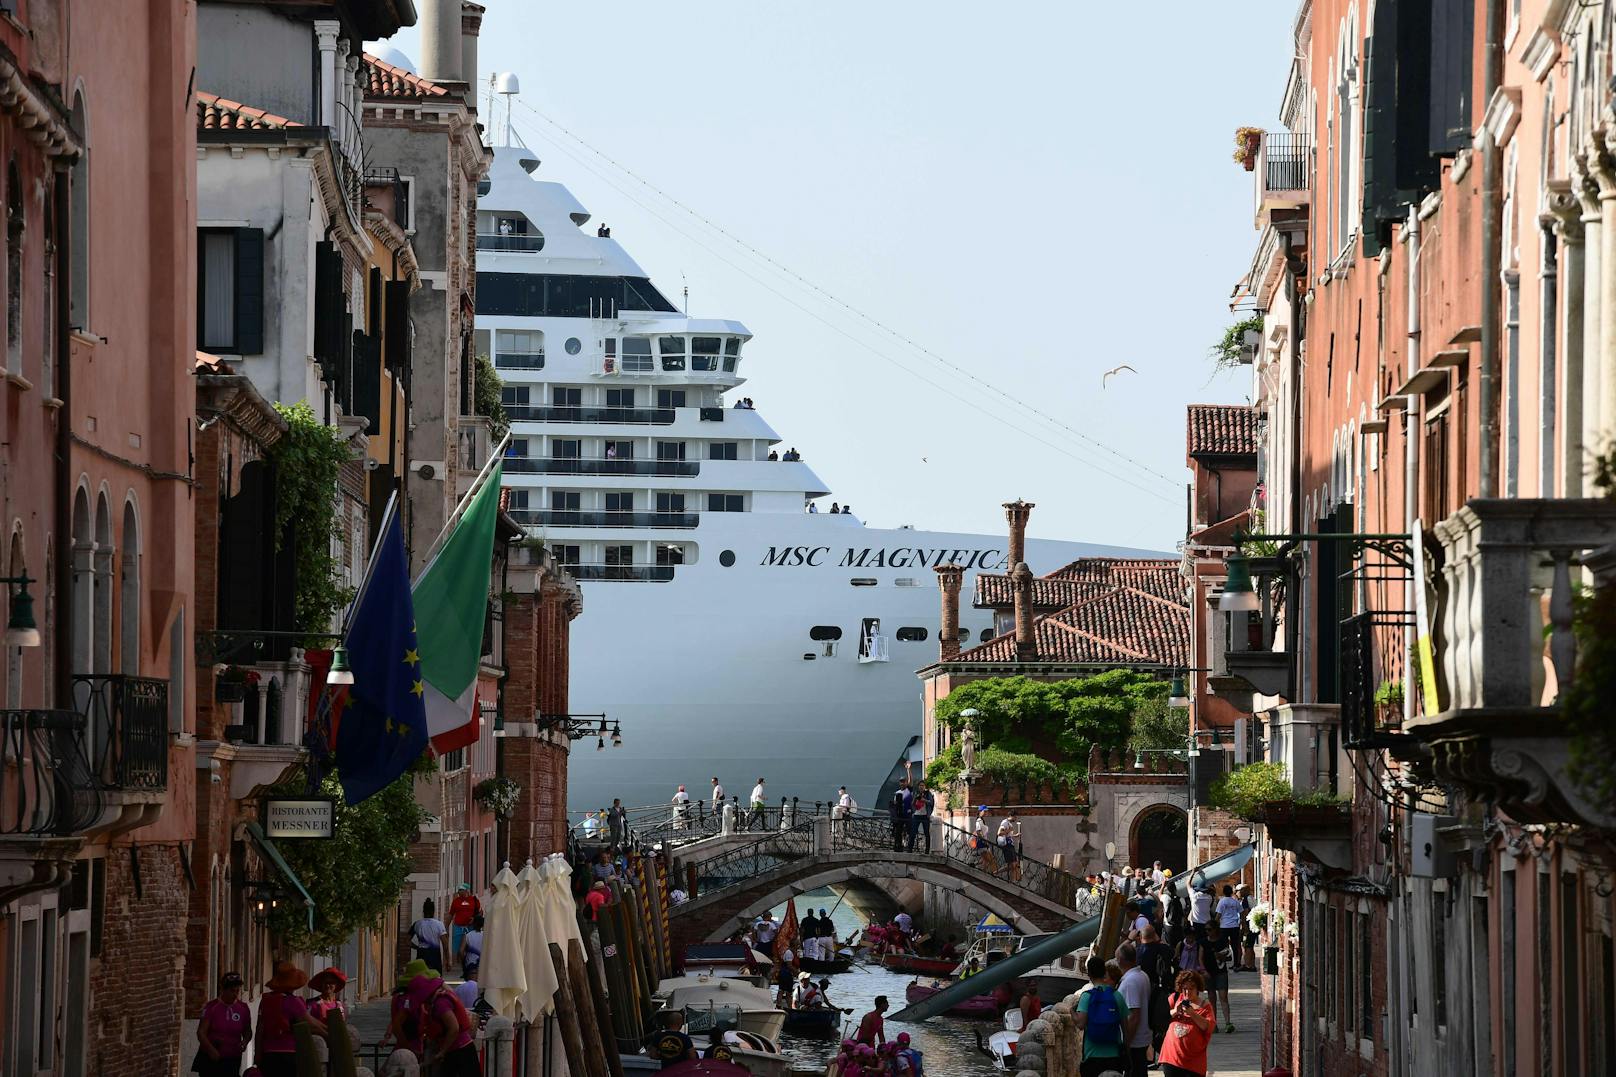 Nach jahrelangen Protesten dürfen große Schiffe vor San Marco und auf dem Giudecca-Kanal ab dem 1. August nicht mehr durchfahren. Foto am 09.06.2019 aufgenommen.